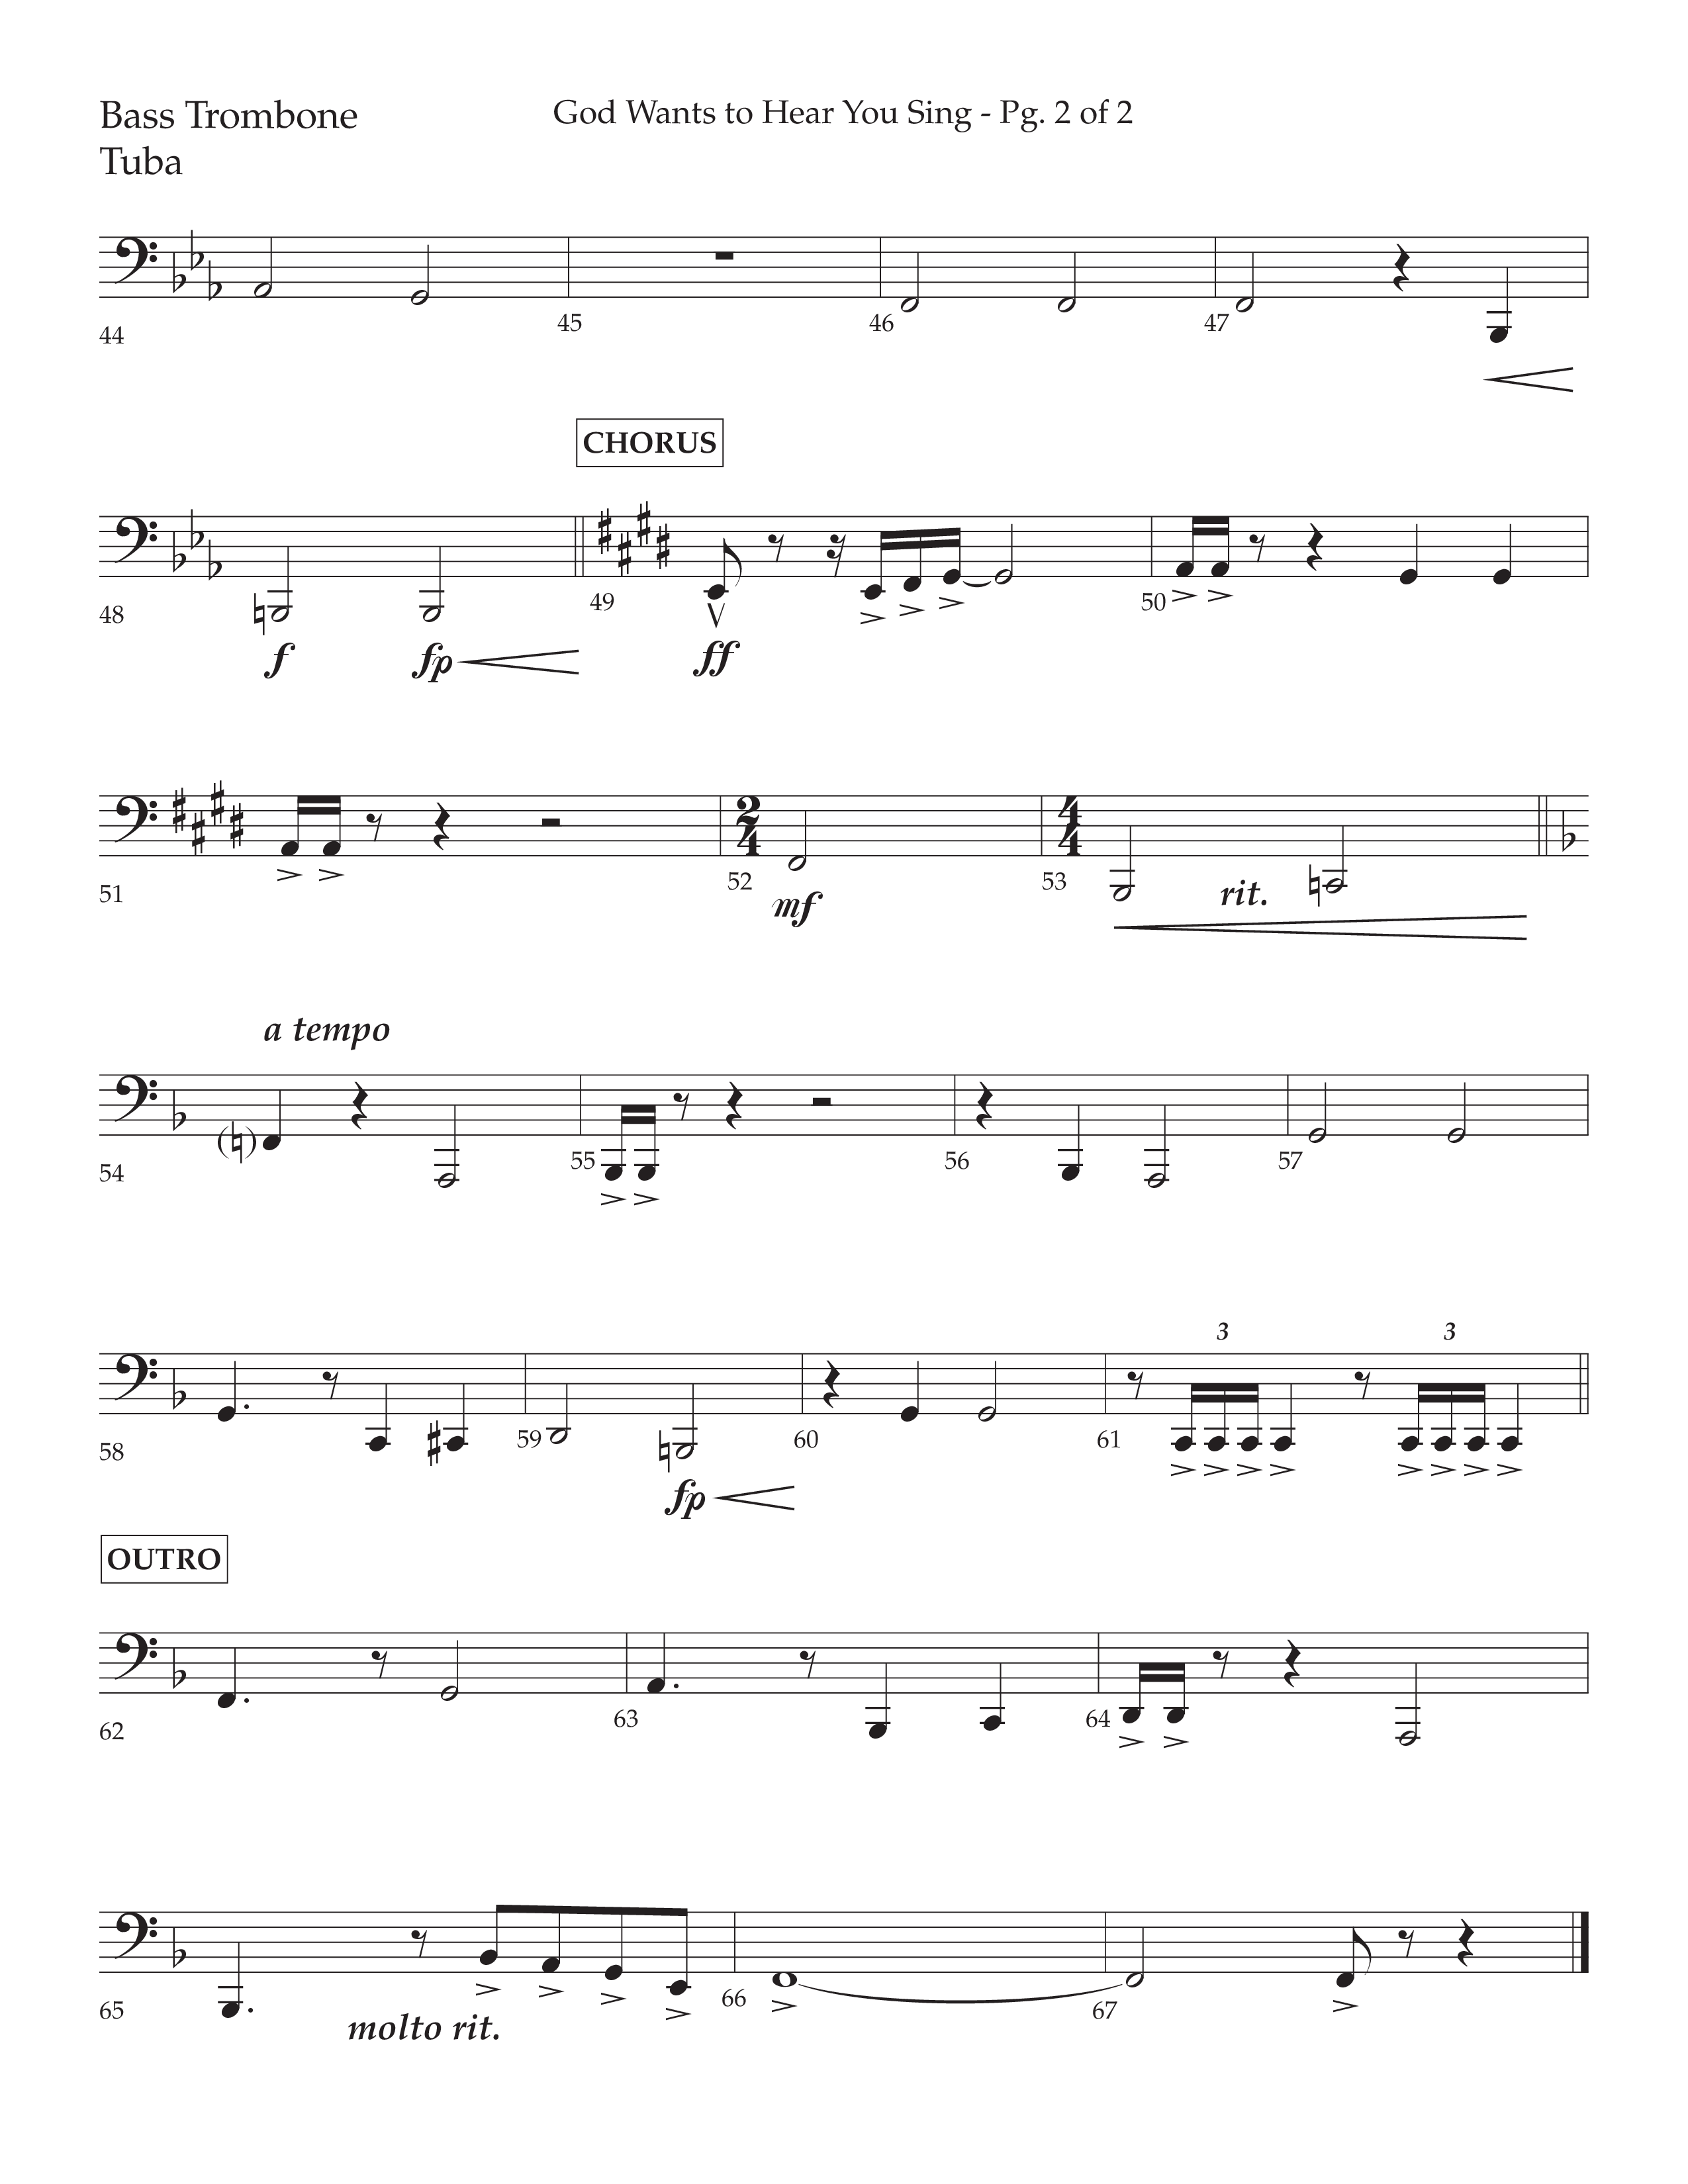 God Wants To Hear You Sing (Choral Anthem SATB) Bass Trombone, Tuba (Lifeway Choral / Arr. Bradley Knight)